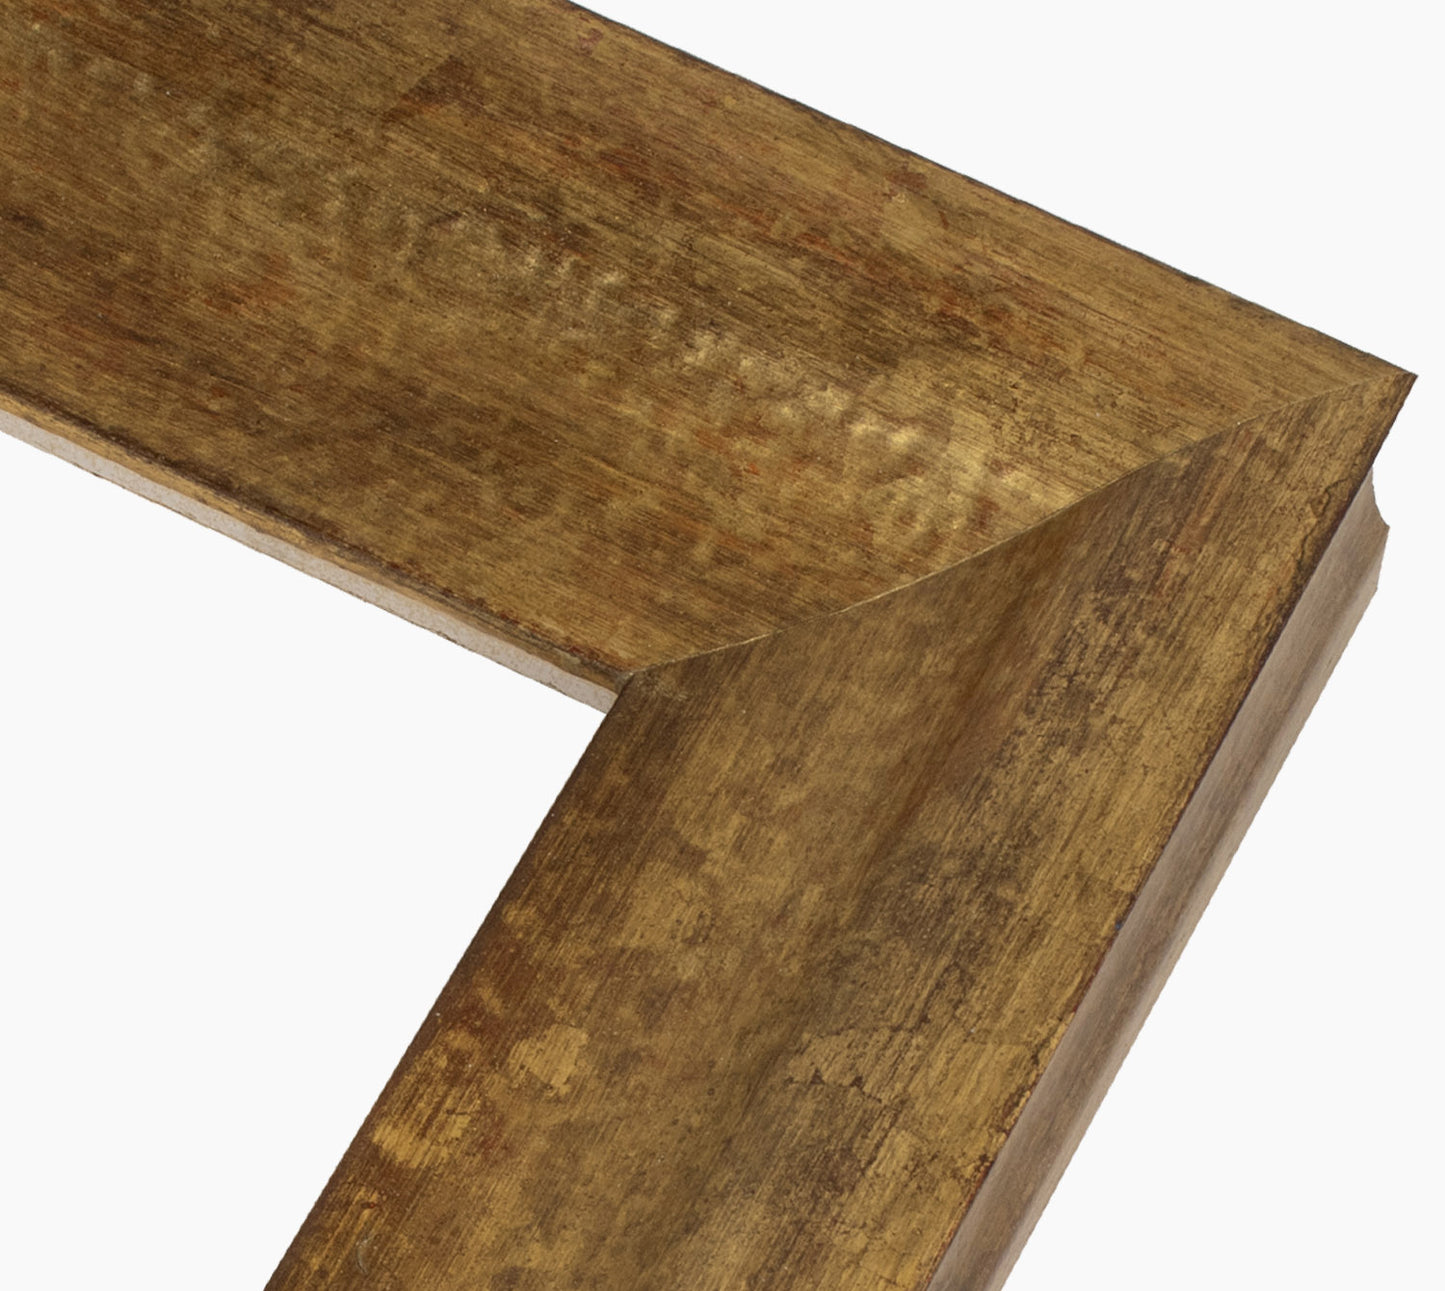 345.230 cadre en bois à la feuille d'or antique mesure de profil 60x45 mm